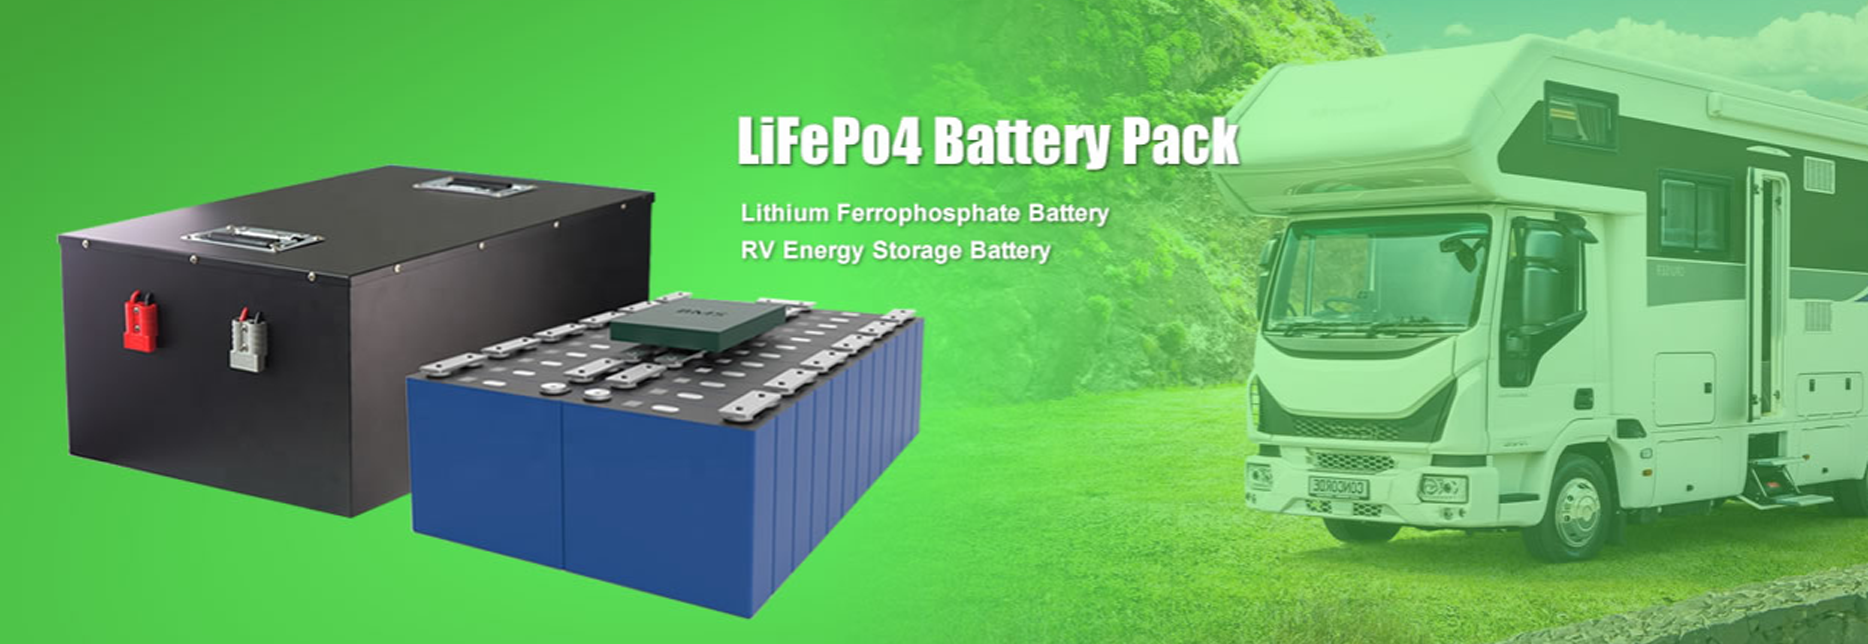 LiFePo4 Batter Pack